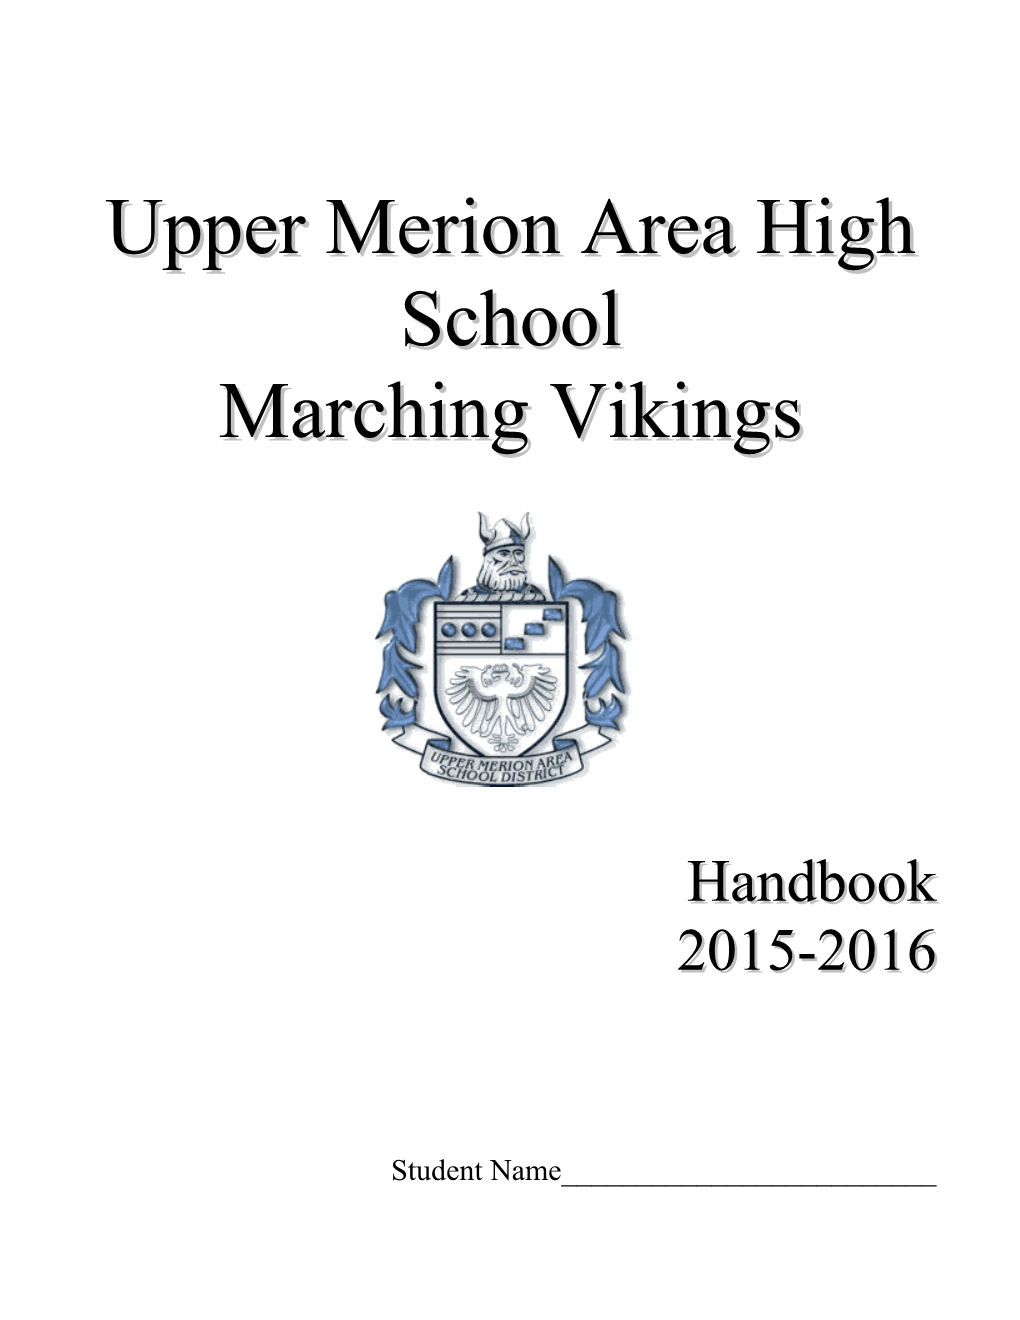 Upper Merion Area High School s1